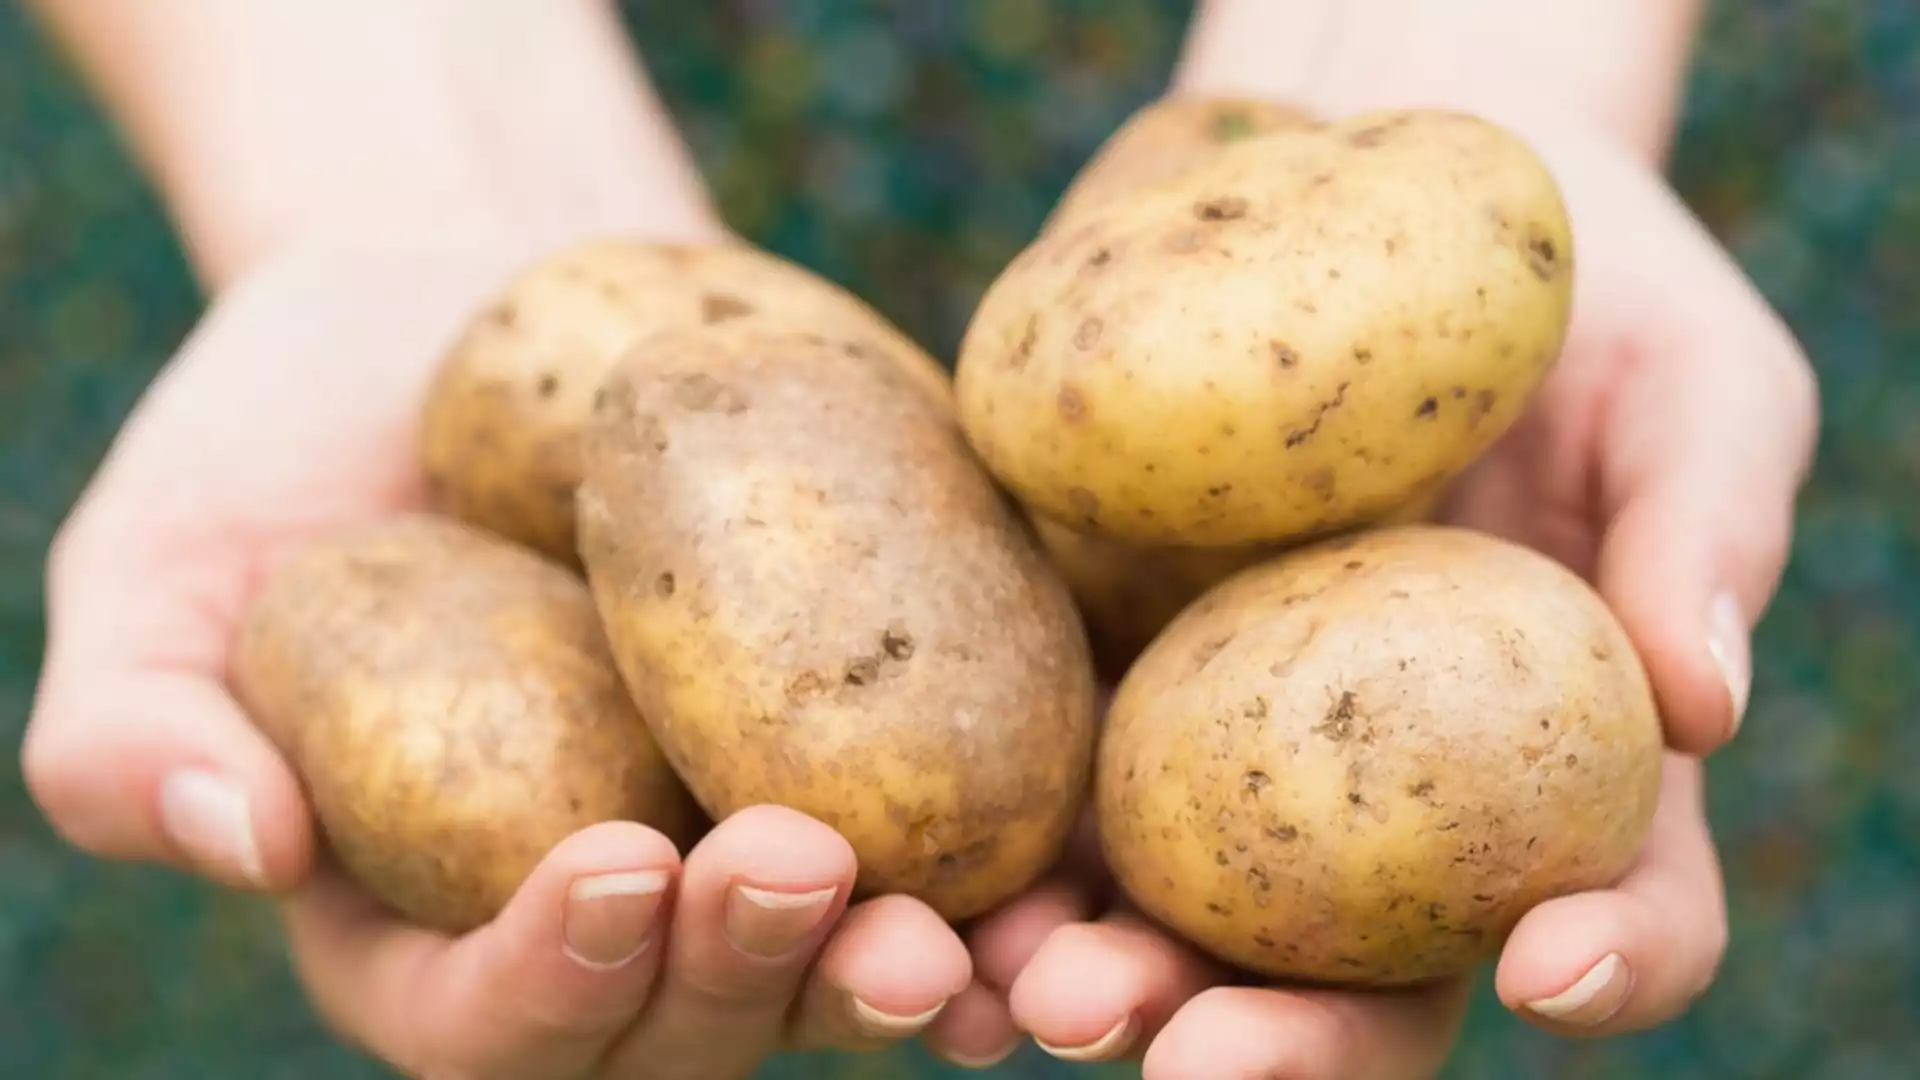 Кога се прави първото пръскане на картофи?